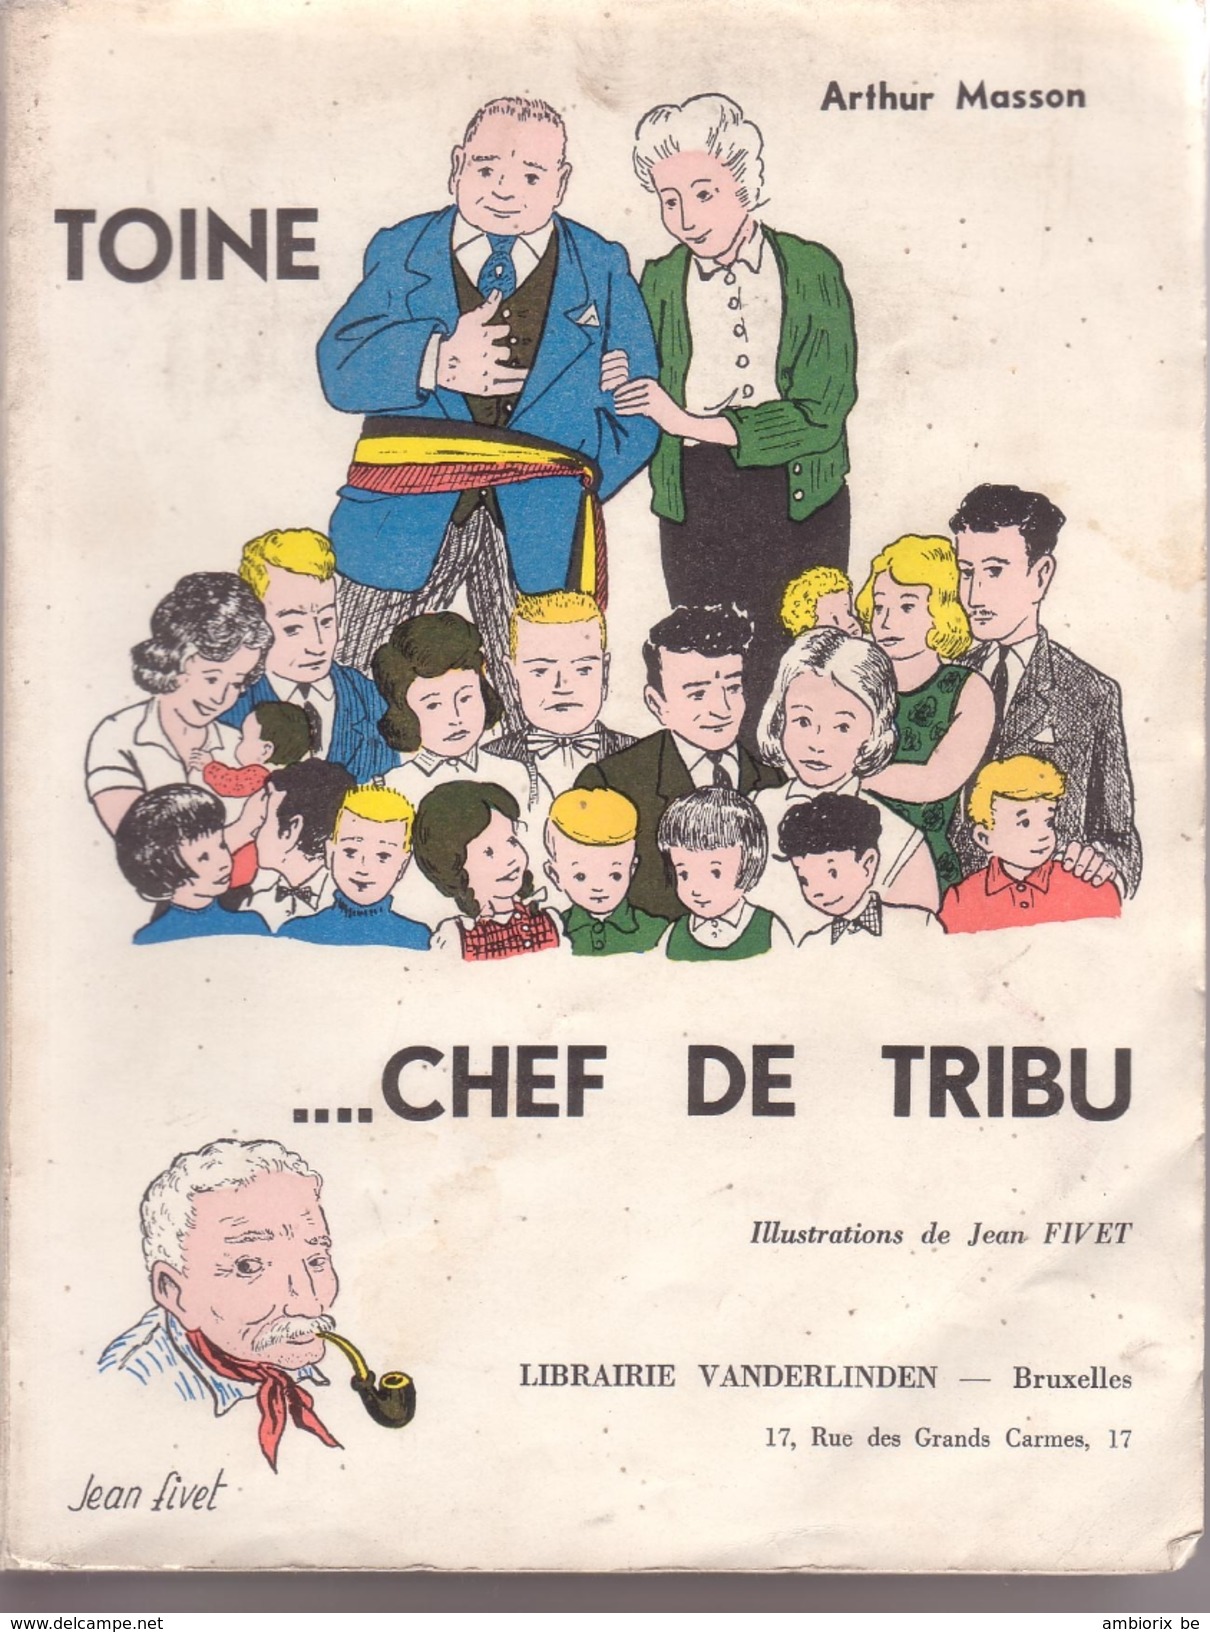 Arthur Masson - Toine  Chef De Tribu - Belgium